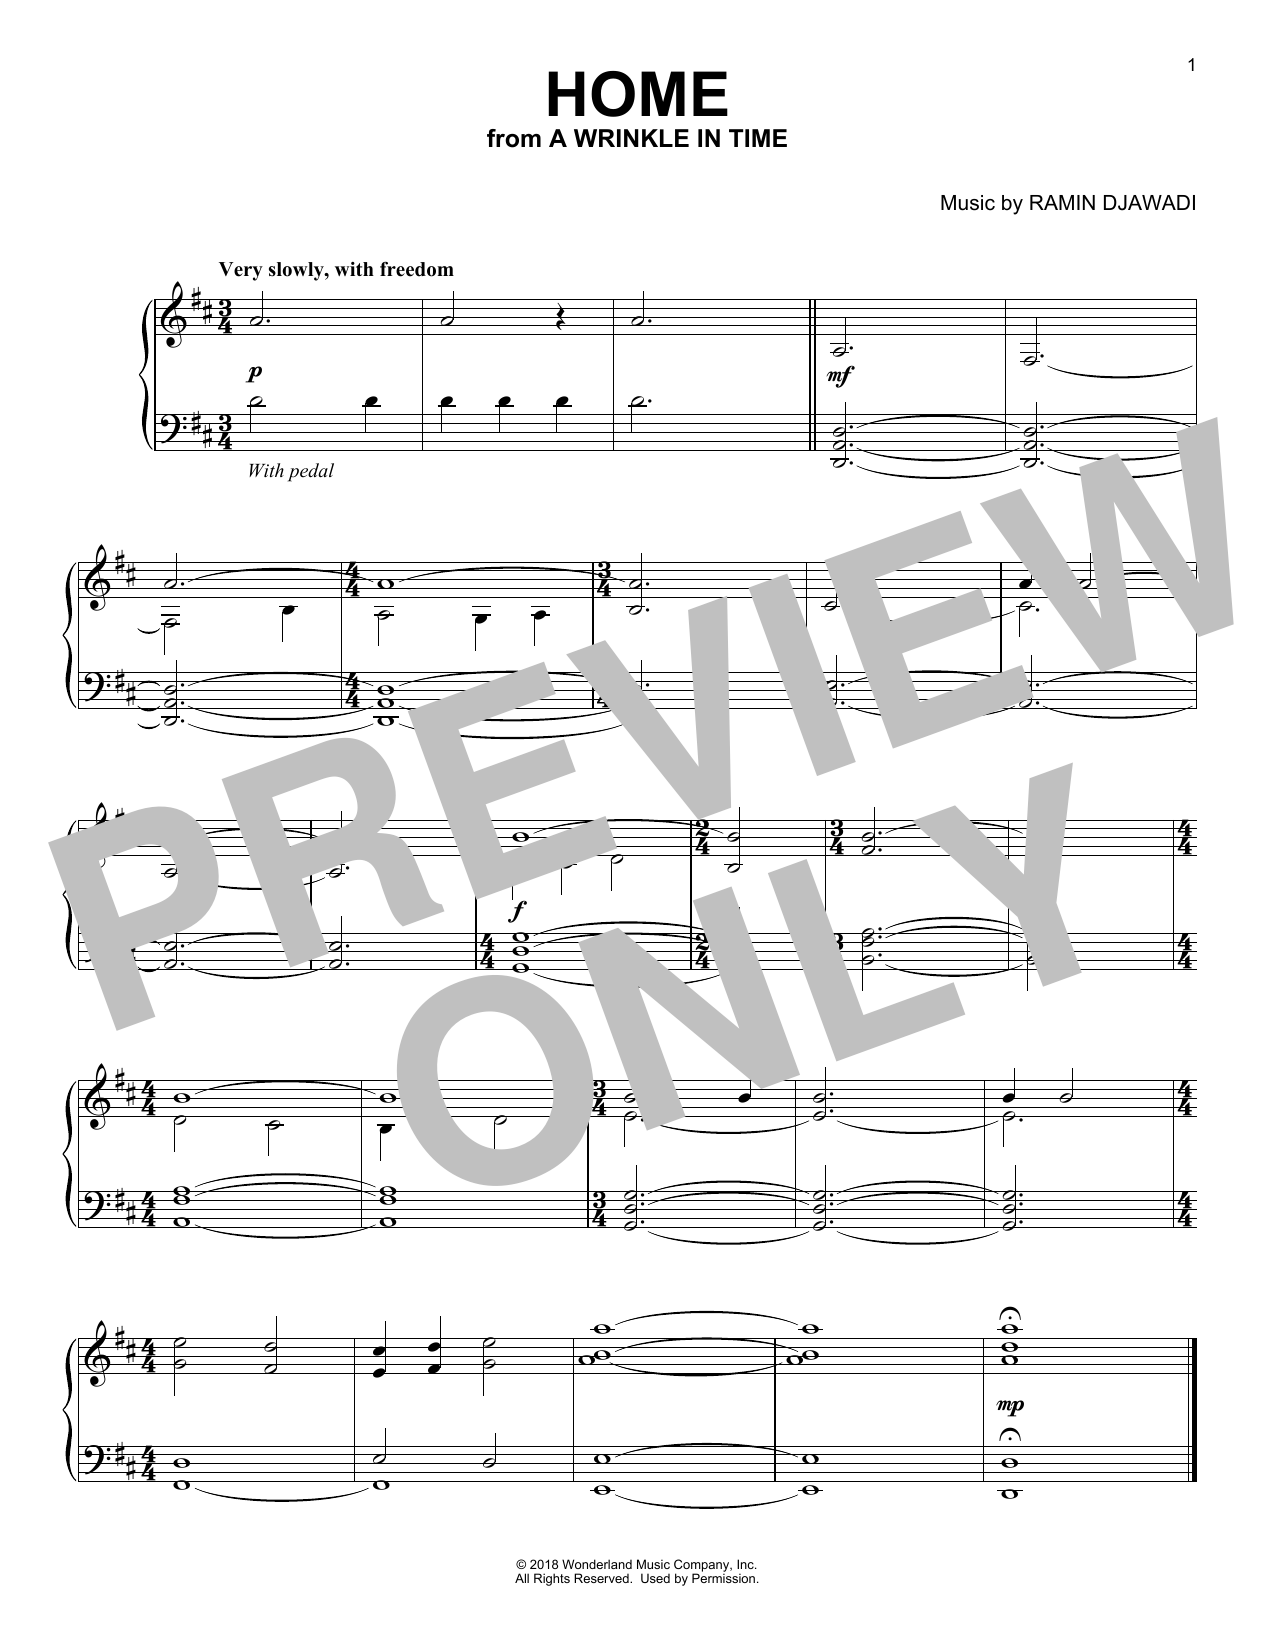 Ramin Djawadi Home Sheet Music Notes & Chords for Piano - Download or Print PDF